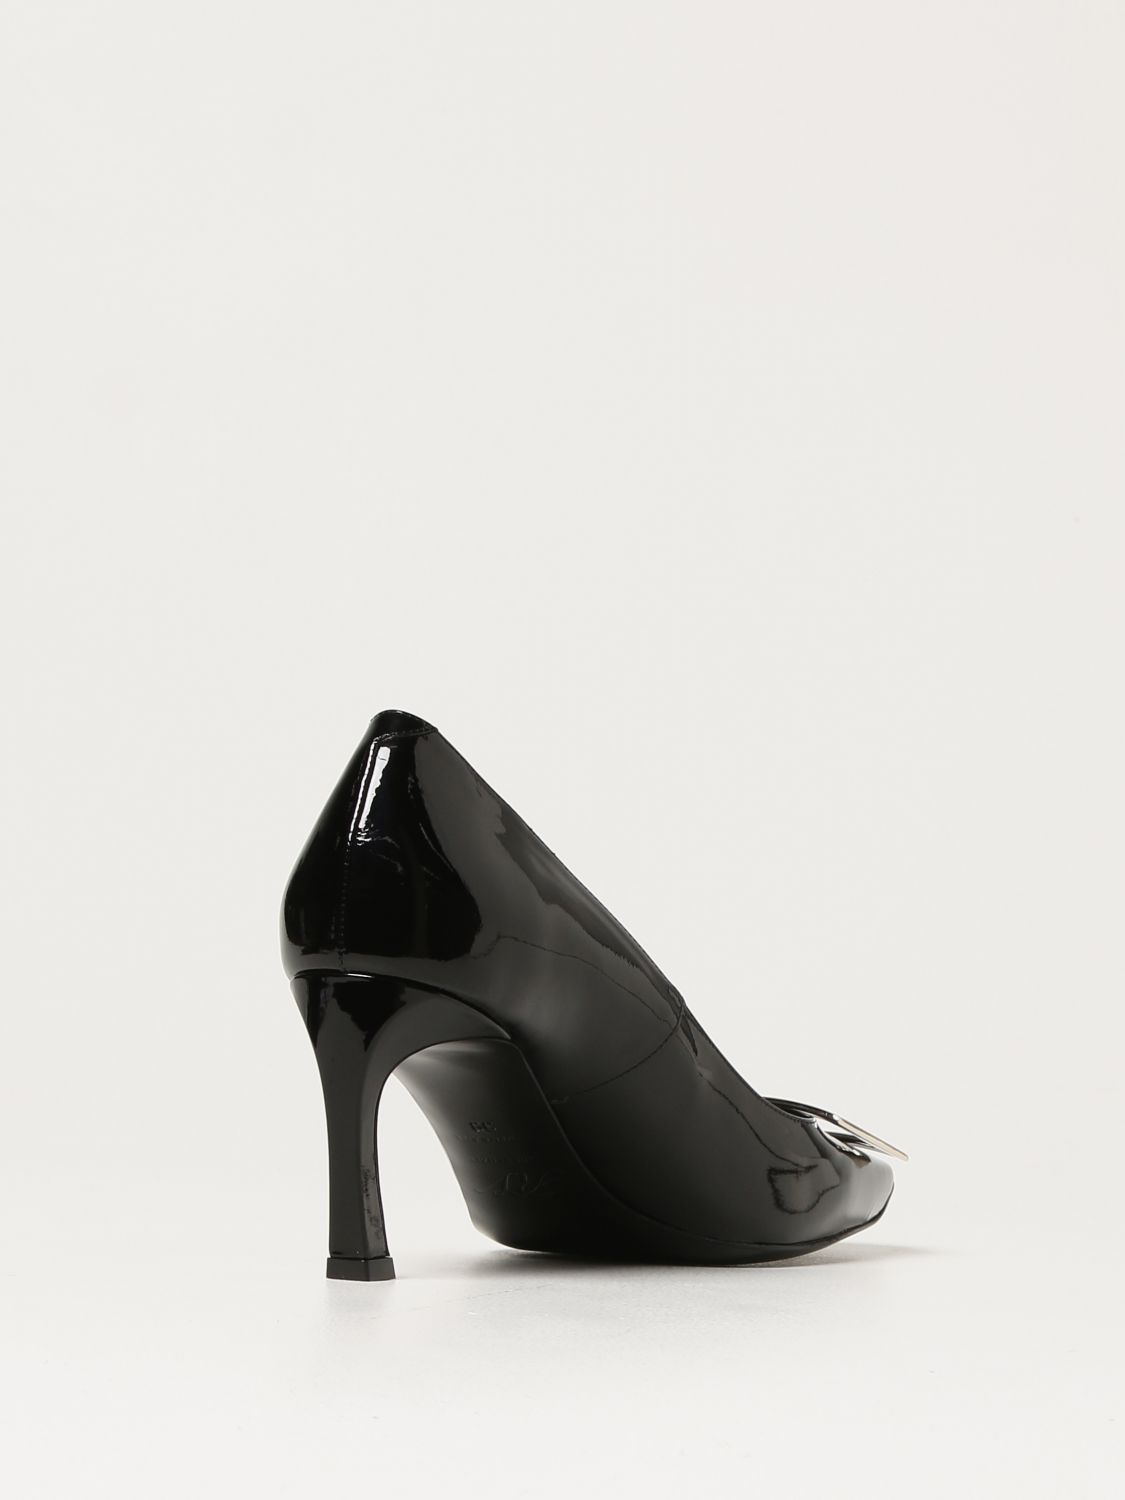 Womens Shoes Heels Pump shoes Roger Vivier Tres Vivier Patent Leather Pumps in Black 